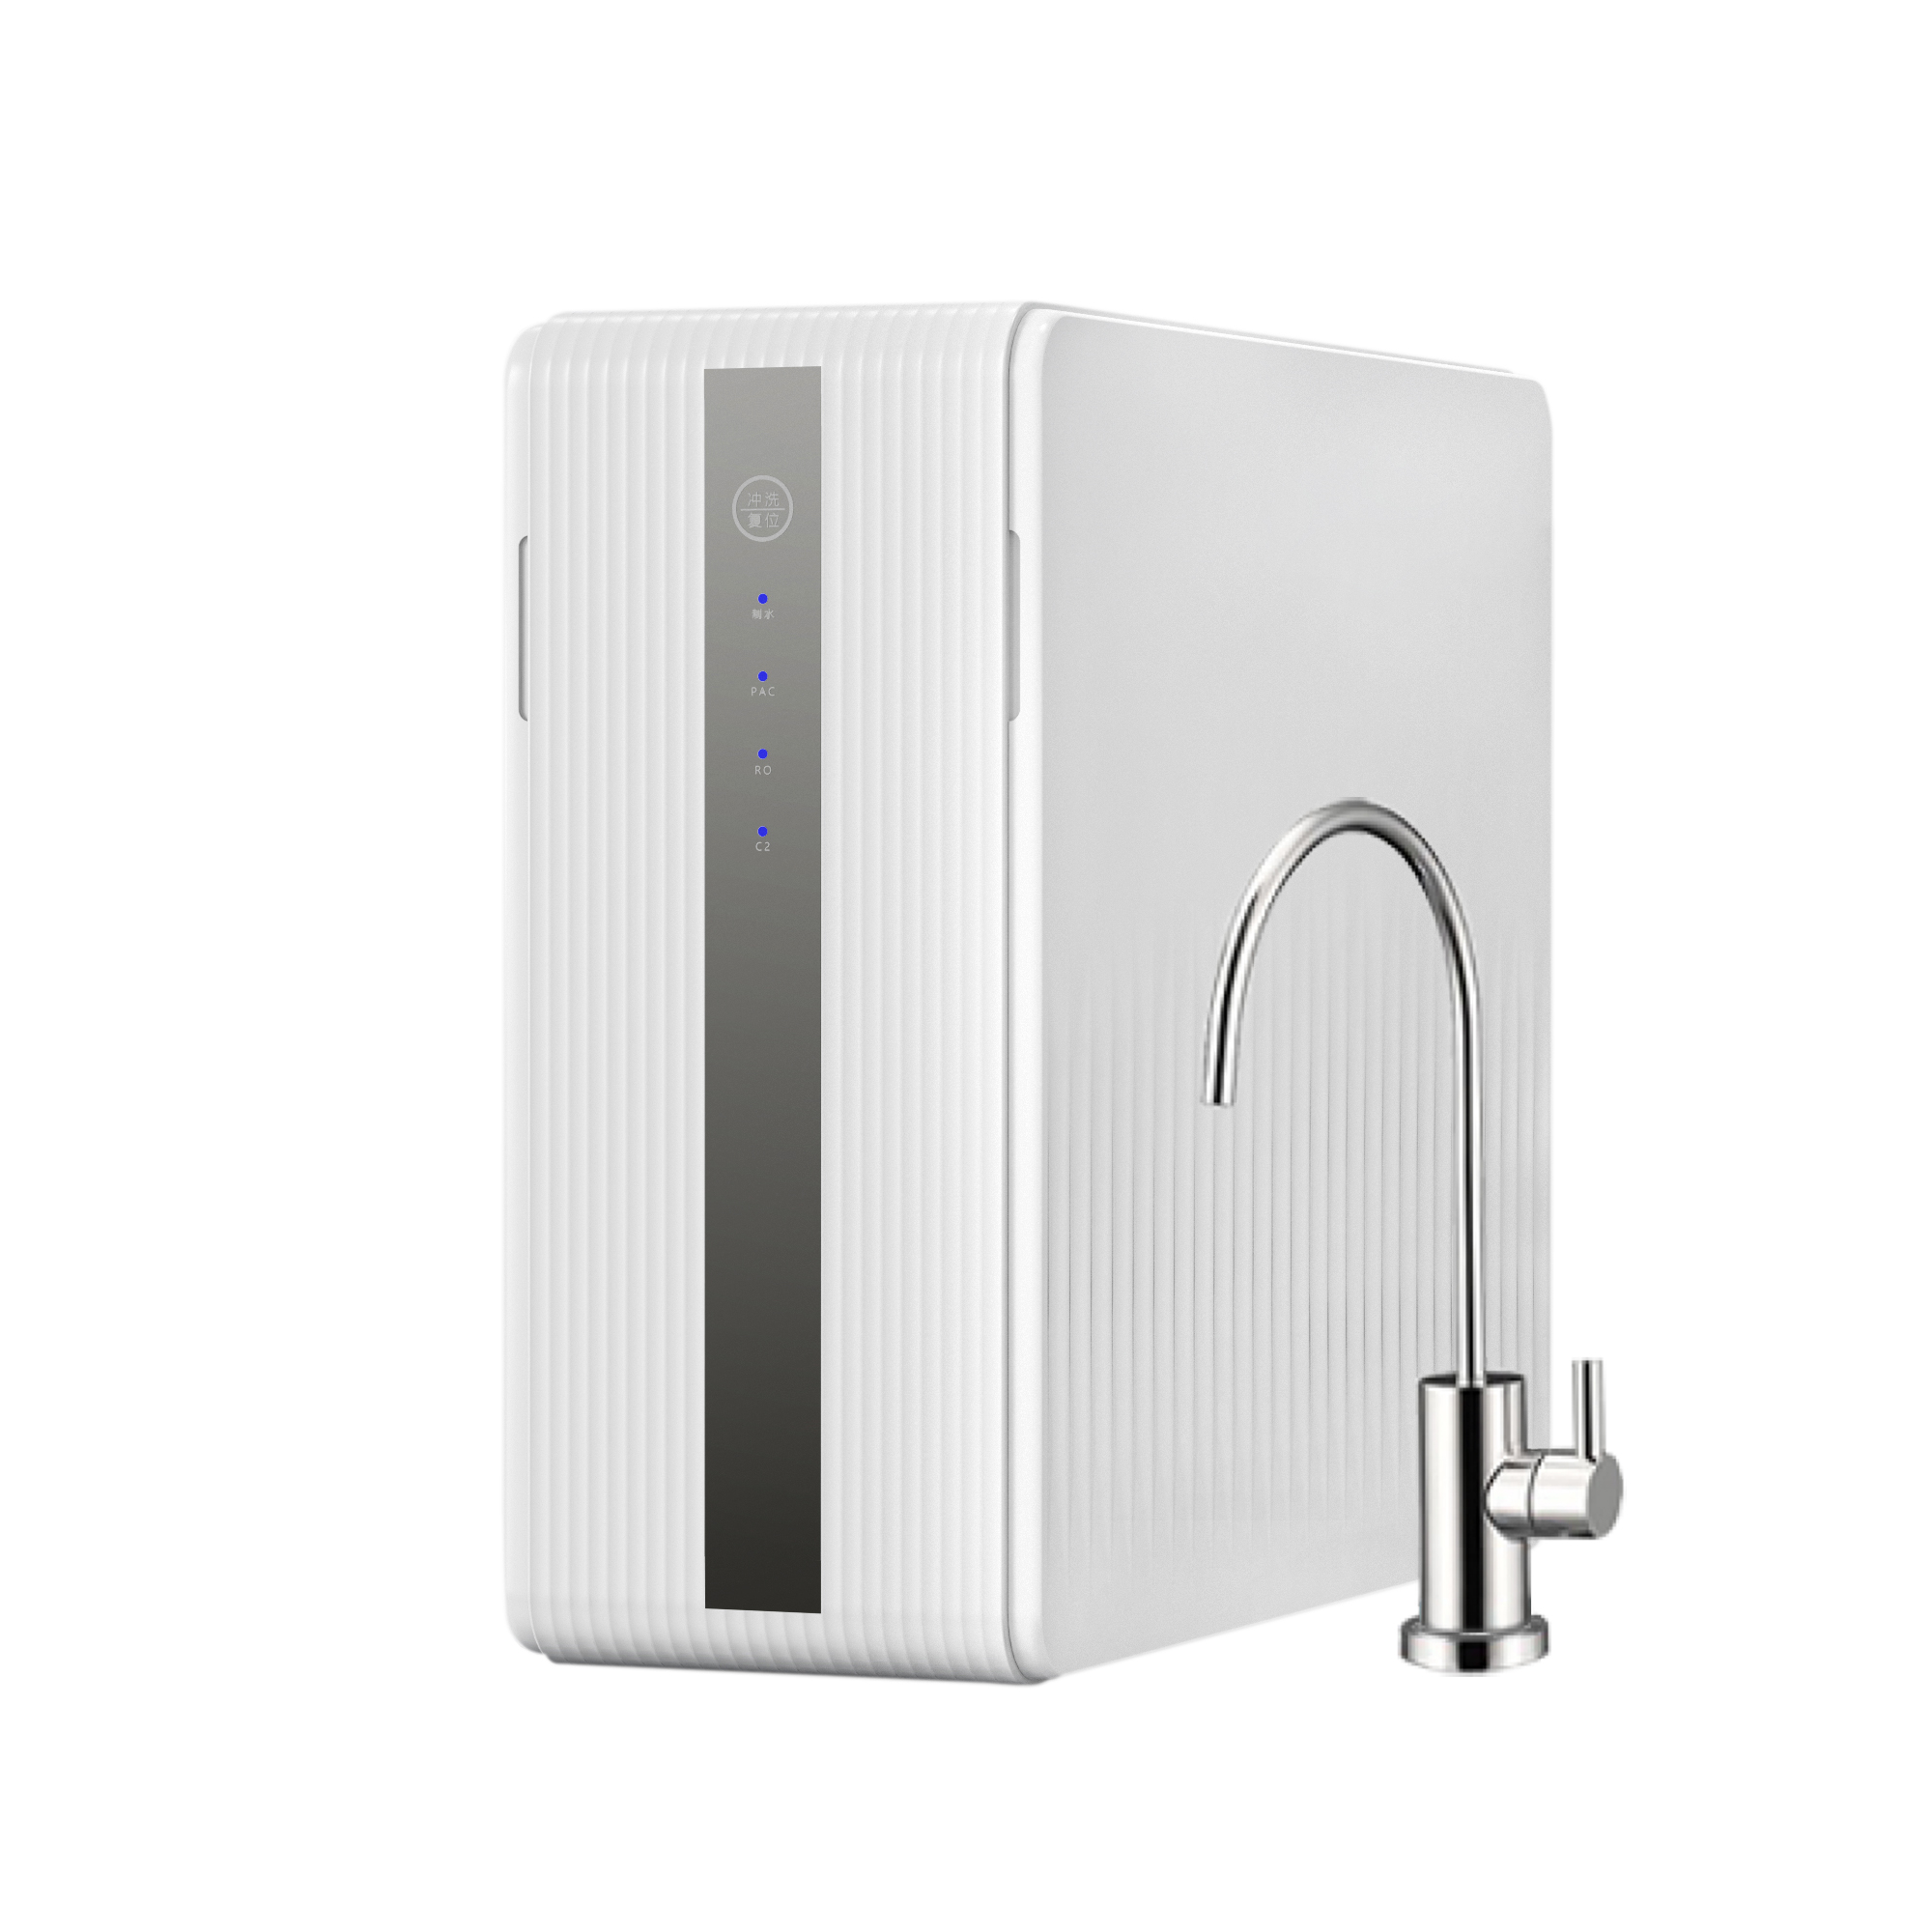 Smart water purifier කර්මාන්තශාලාව 400G 500G ජල පෙරහන් සින්ක් යට